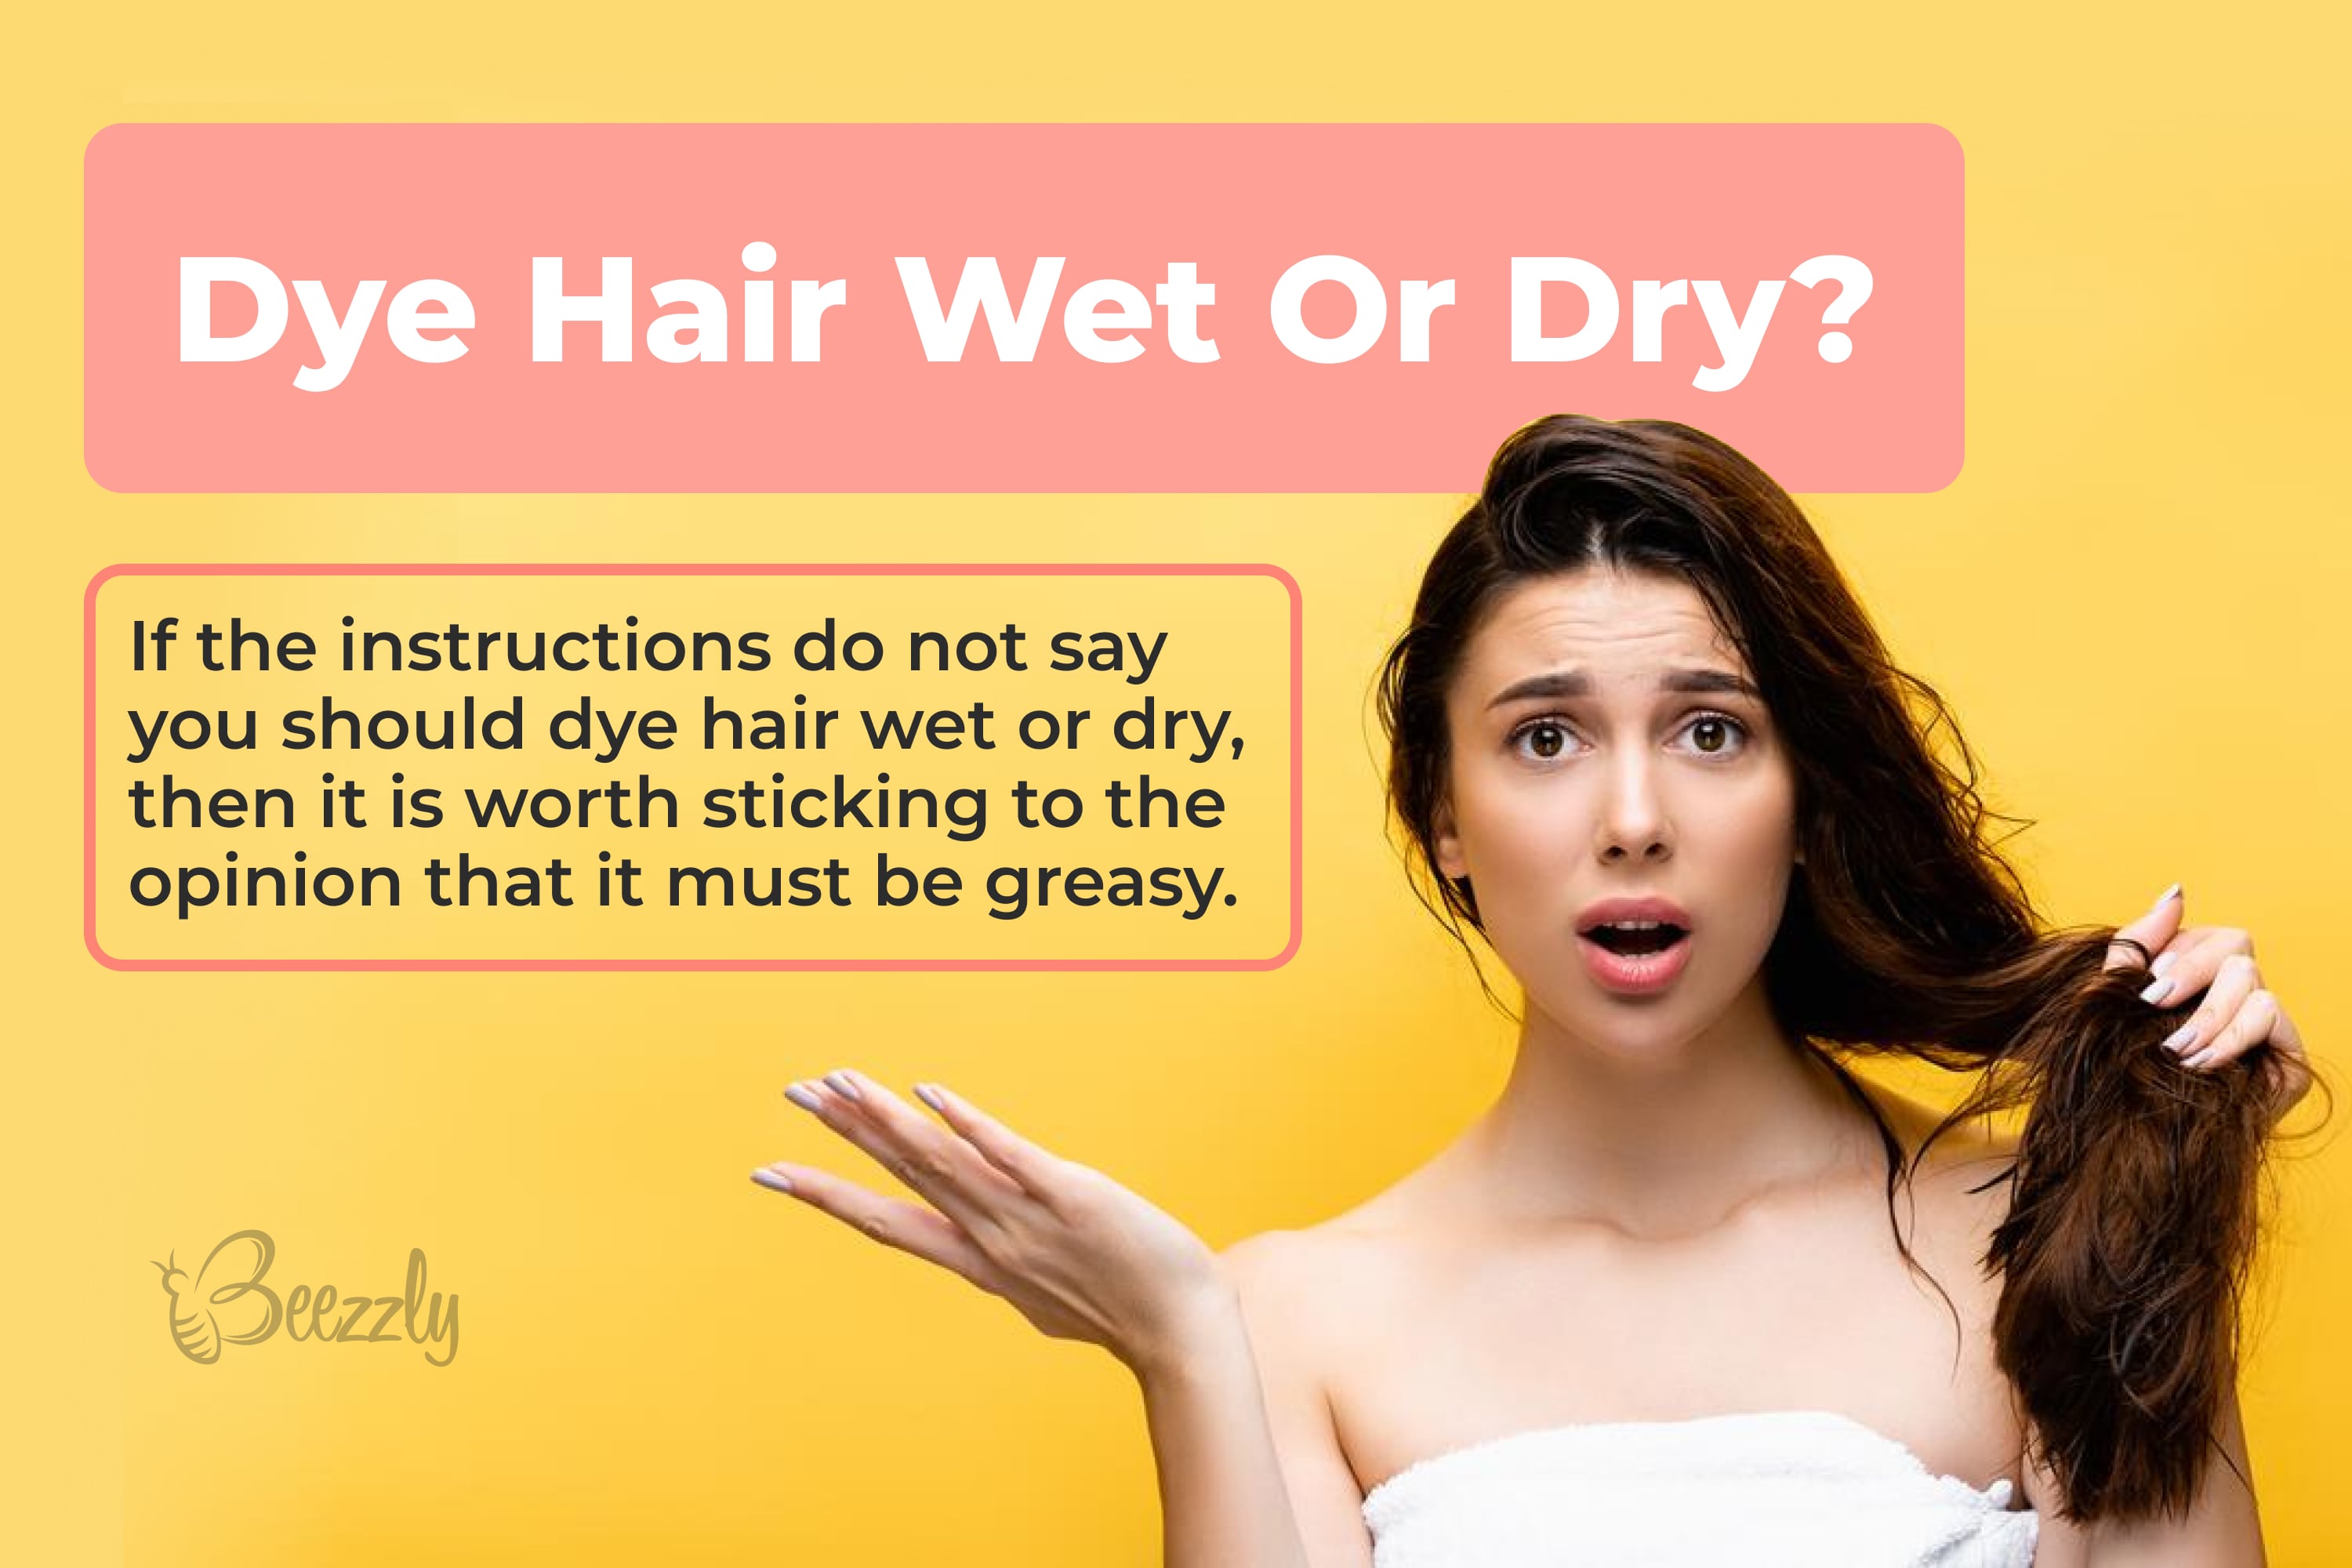 Dye hair wet or dry